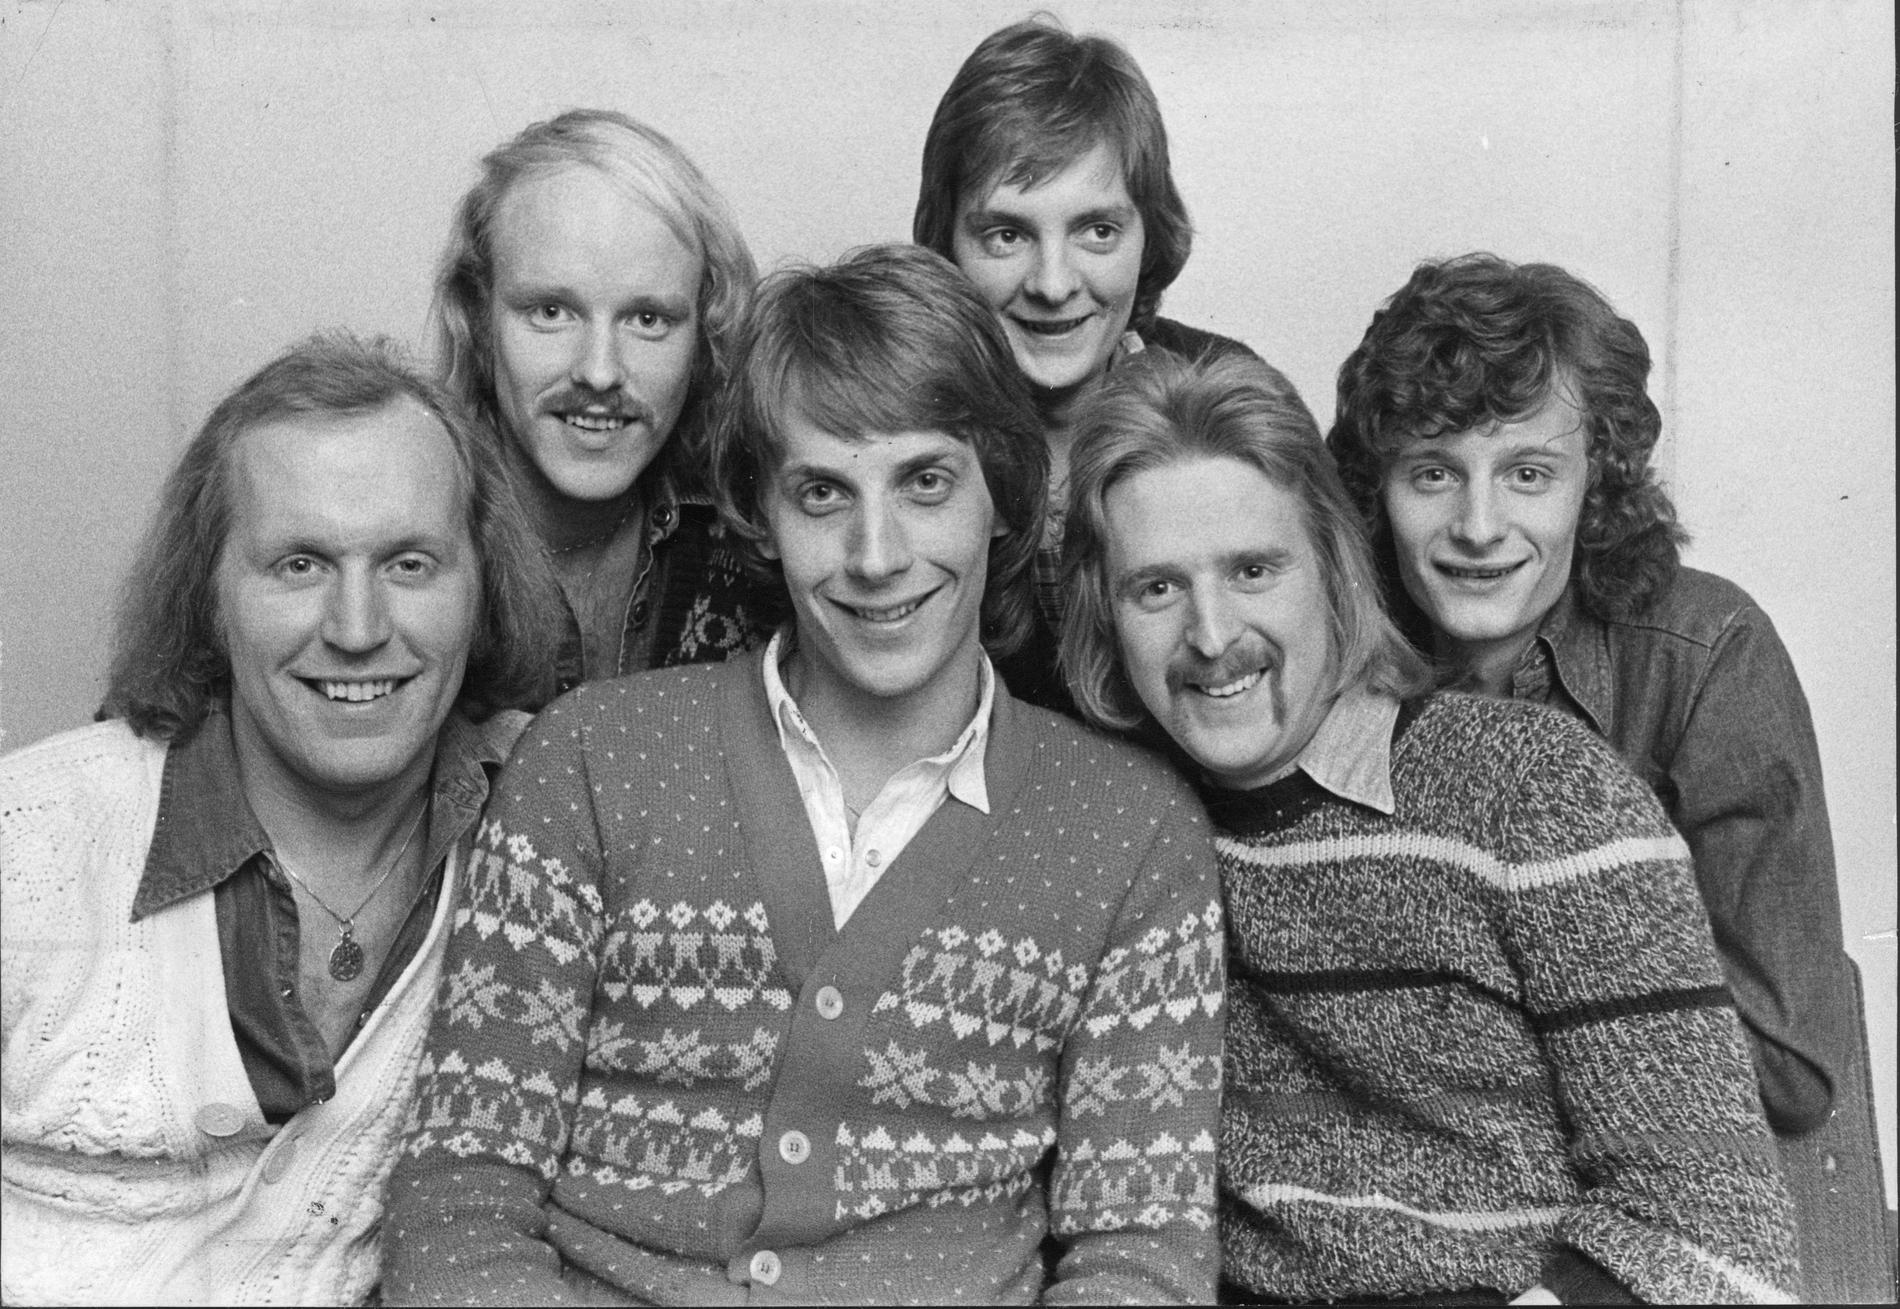 Thorleifs 1976. Thorleif Torstensson, Kim Lindahl, Jörgen Löfstedt, och framför dem: Hasse Magnusson, Magnus Bergdahl och Johan Möller.